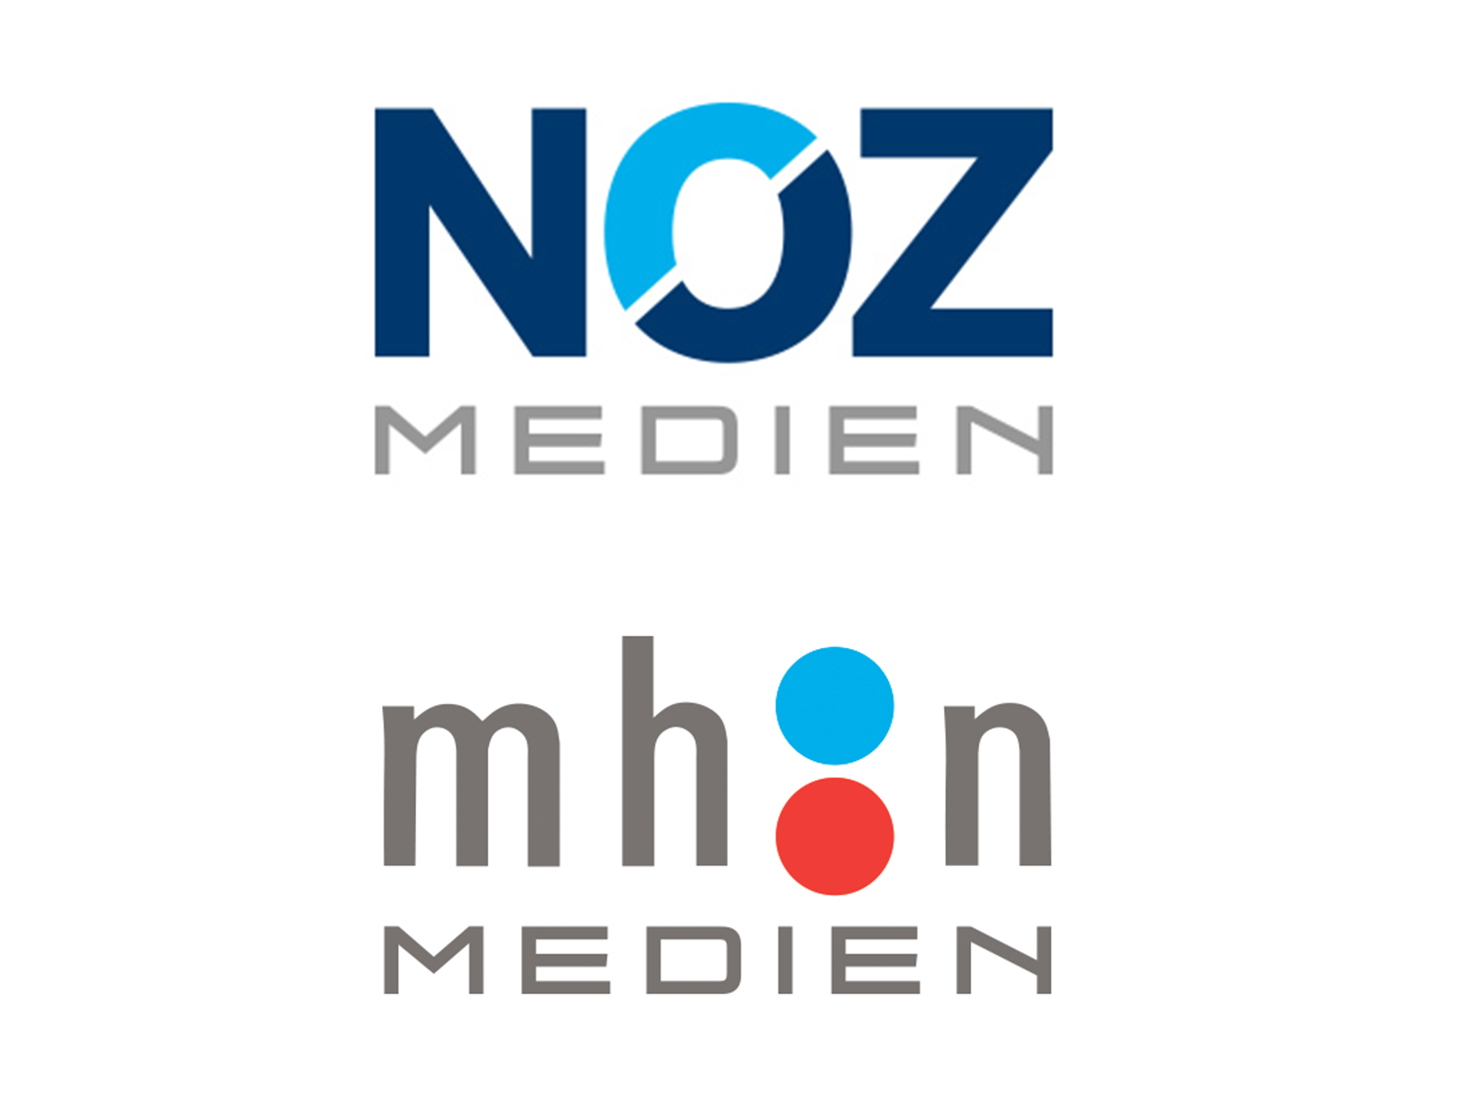 NOZ Medien/ mh:n Medien erwirbt Anteile an Agenturgruppe